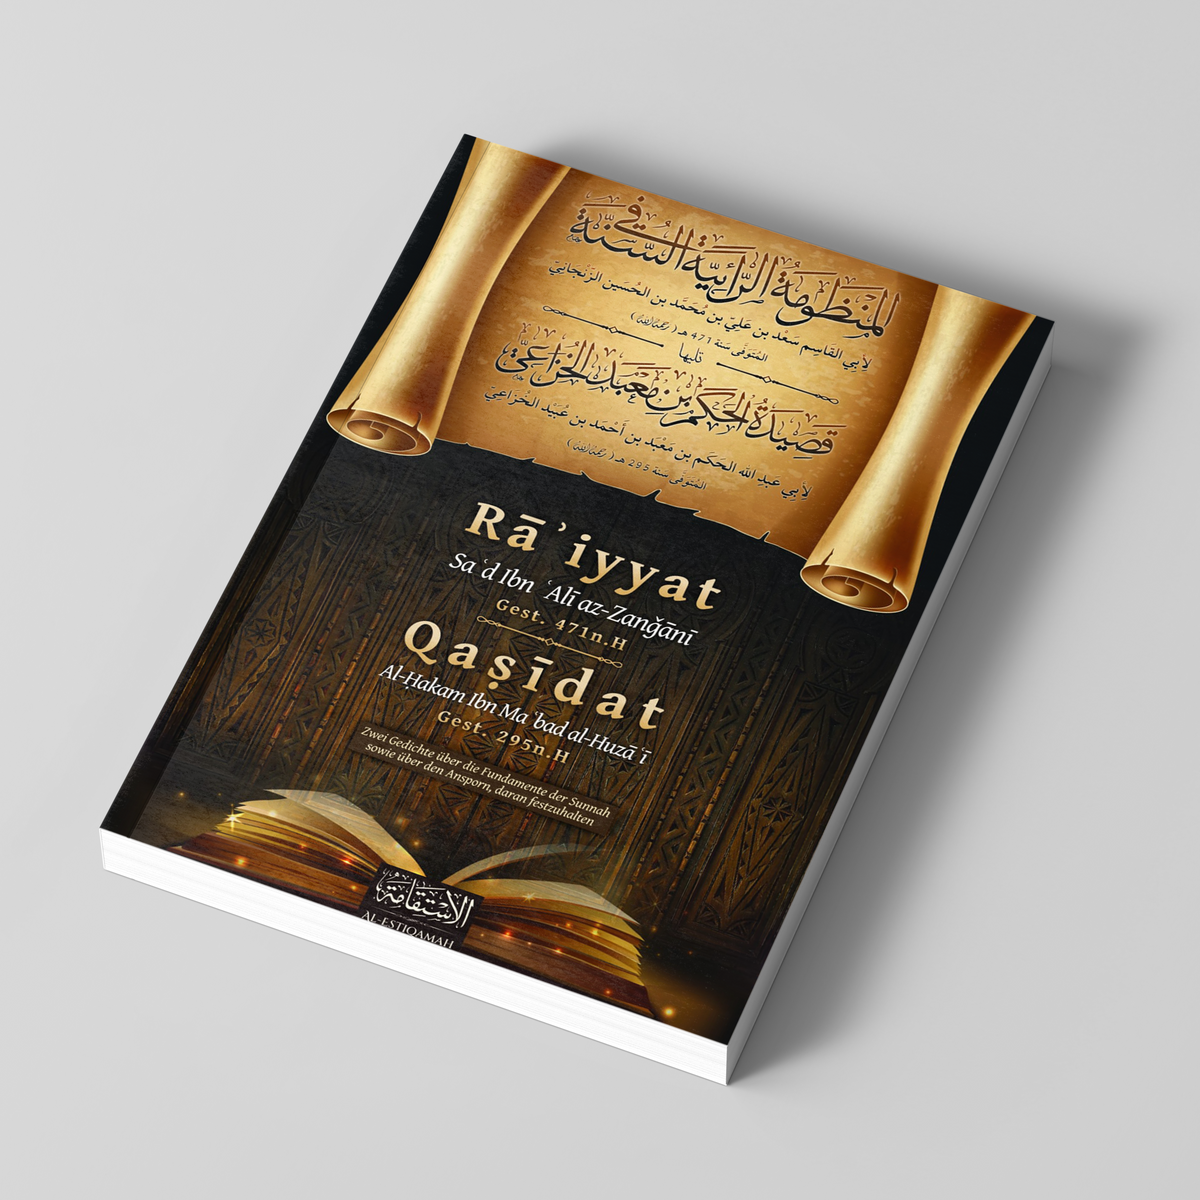 Ra'iyyat und Qasidat – Zwei Gedichte über die Fundamente der Sunnah